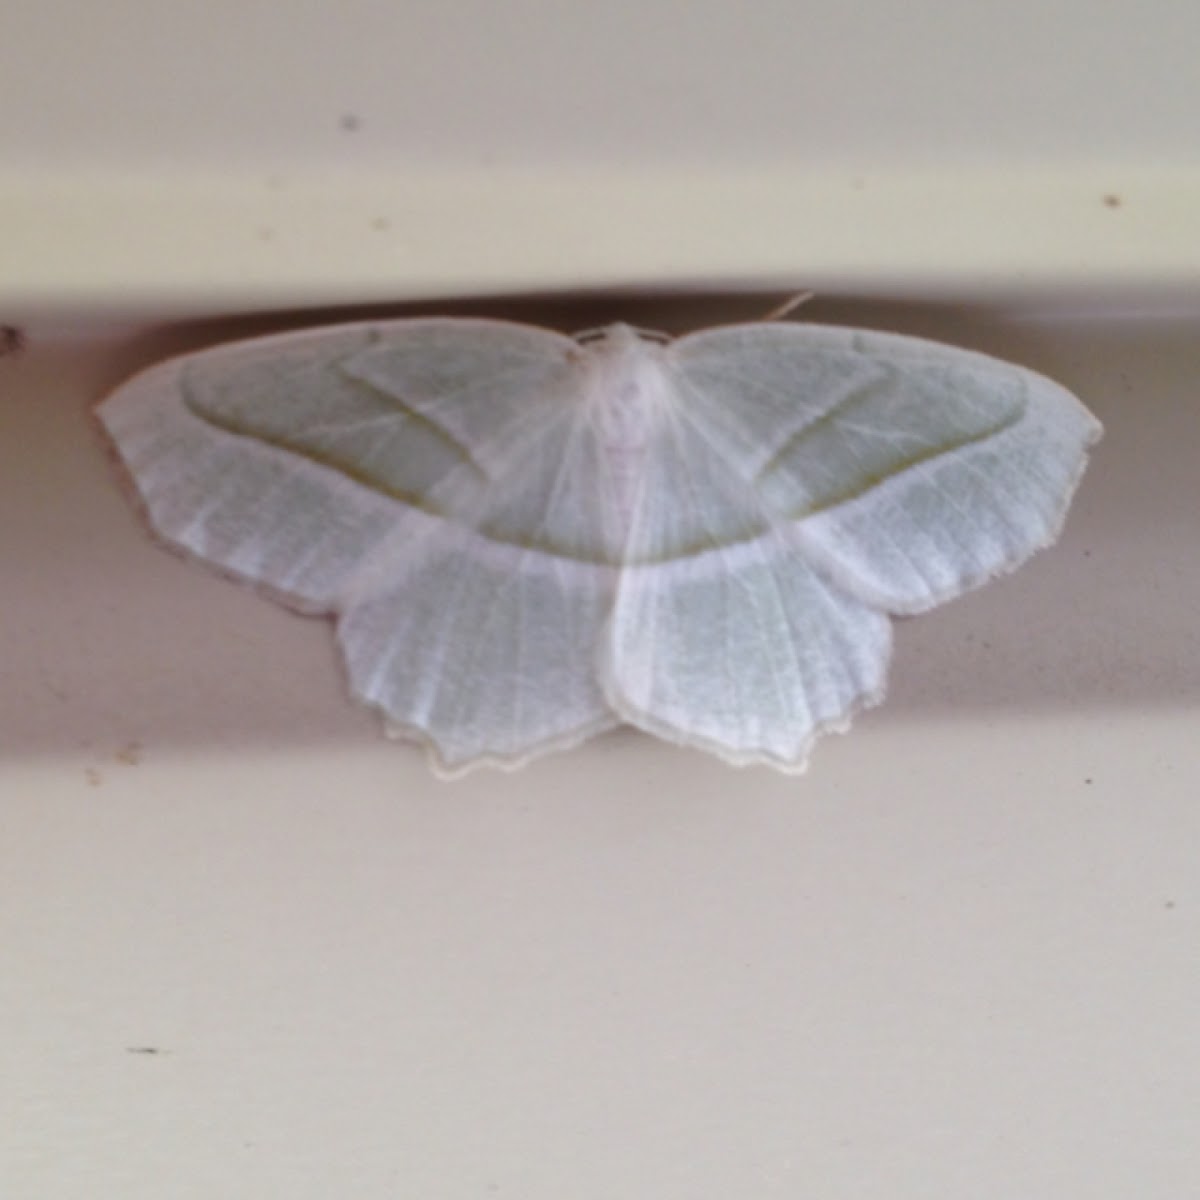 Pale beauty moth